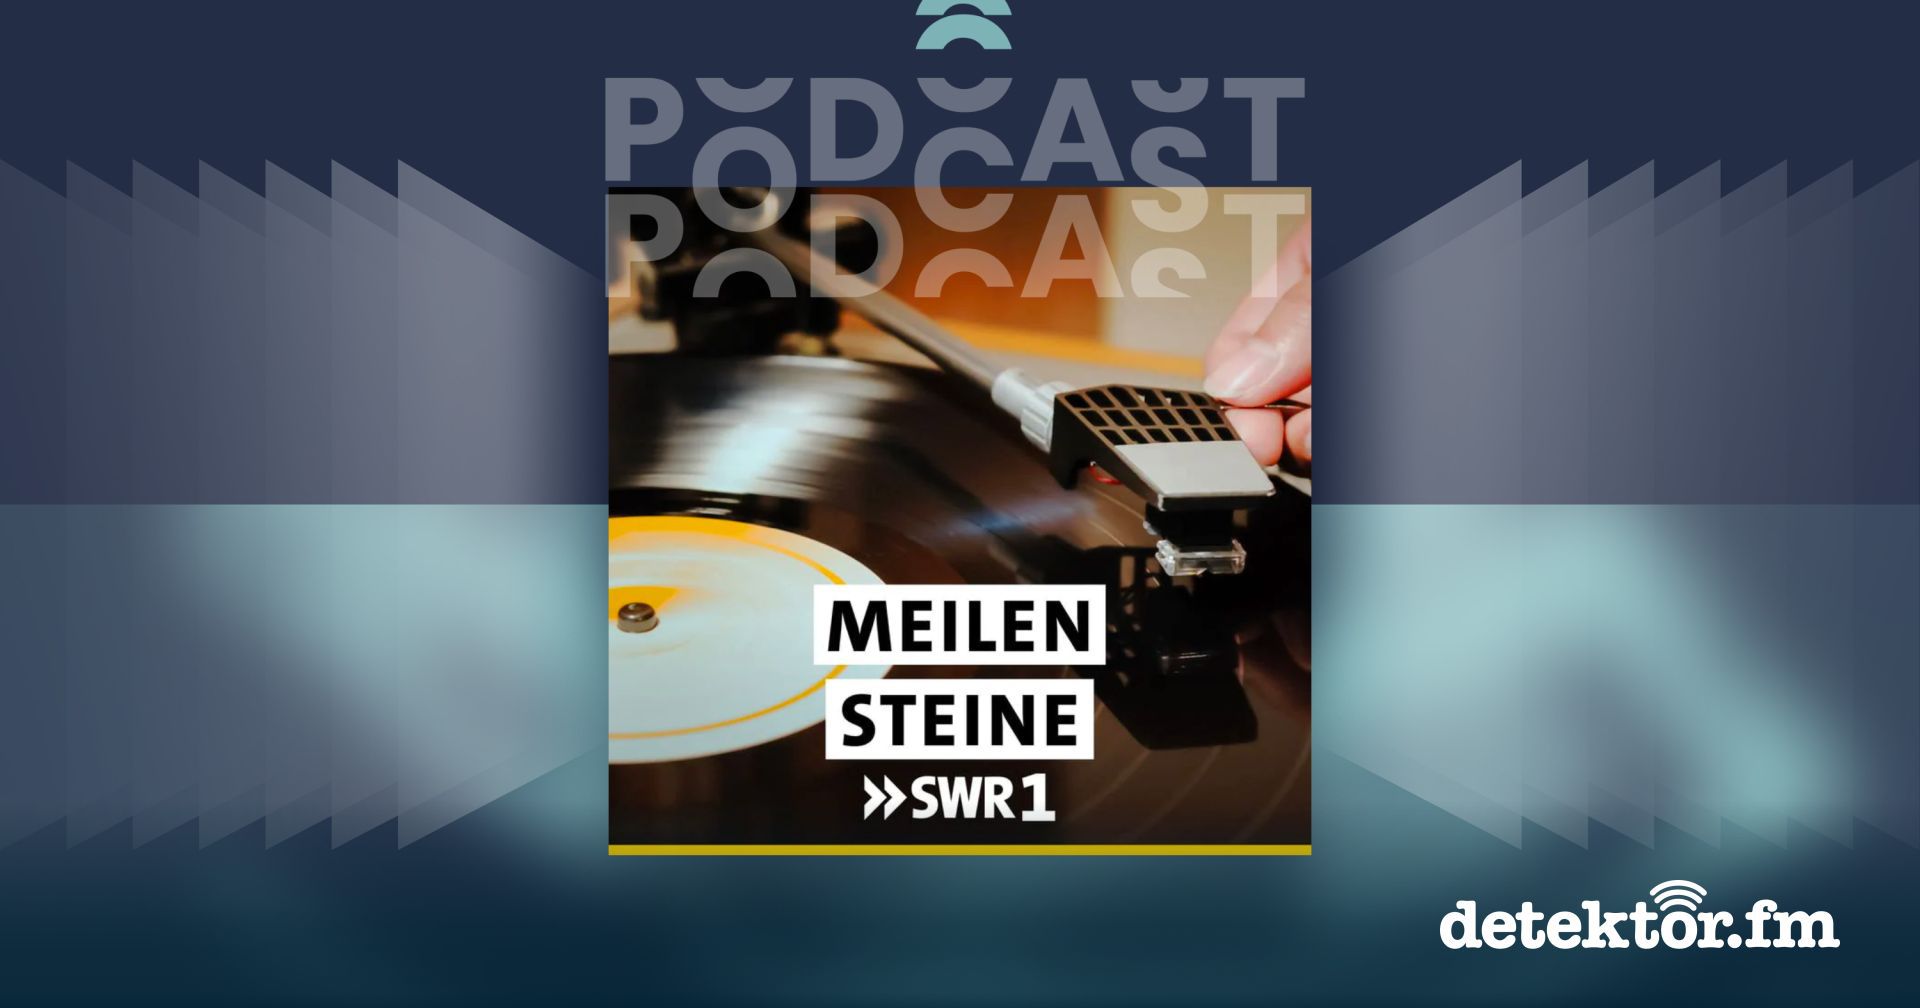 PodcastPodcast | SWR1 Meilensteine - Alben, die Geschichte machten